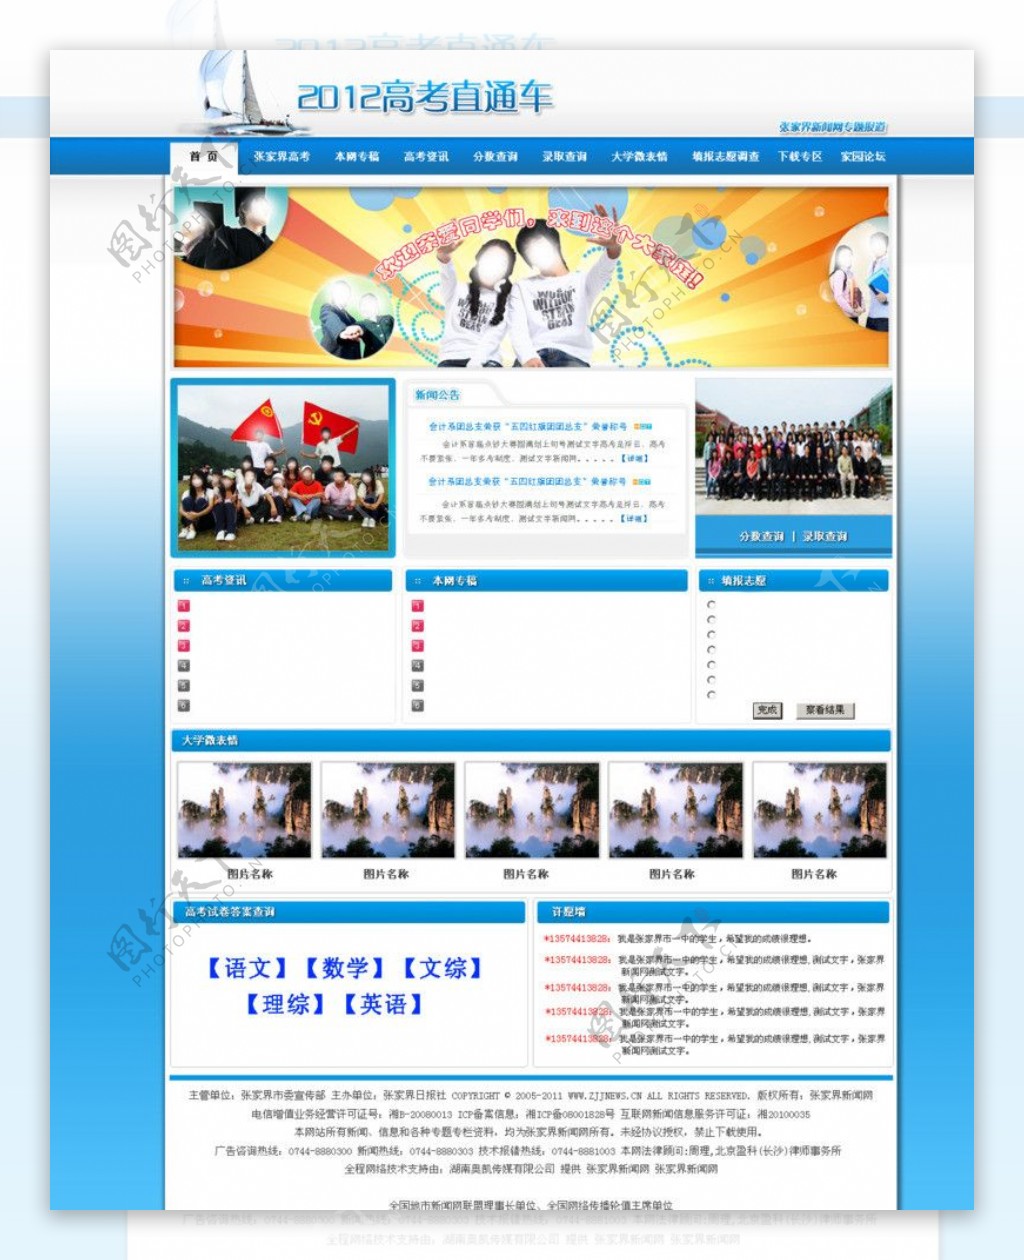 教育网站首页图片